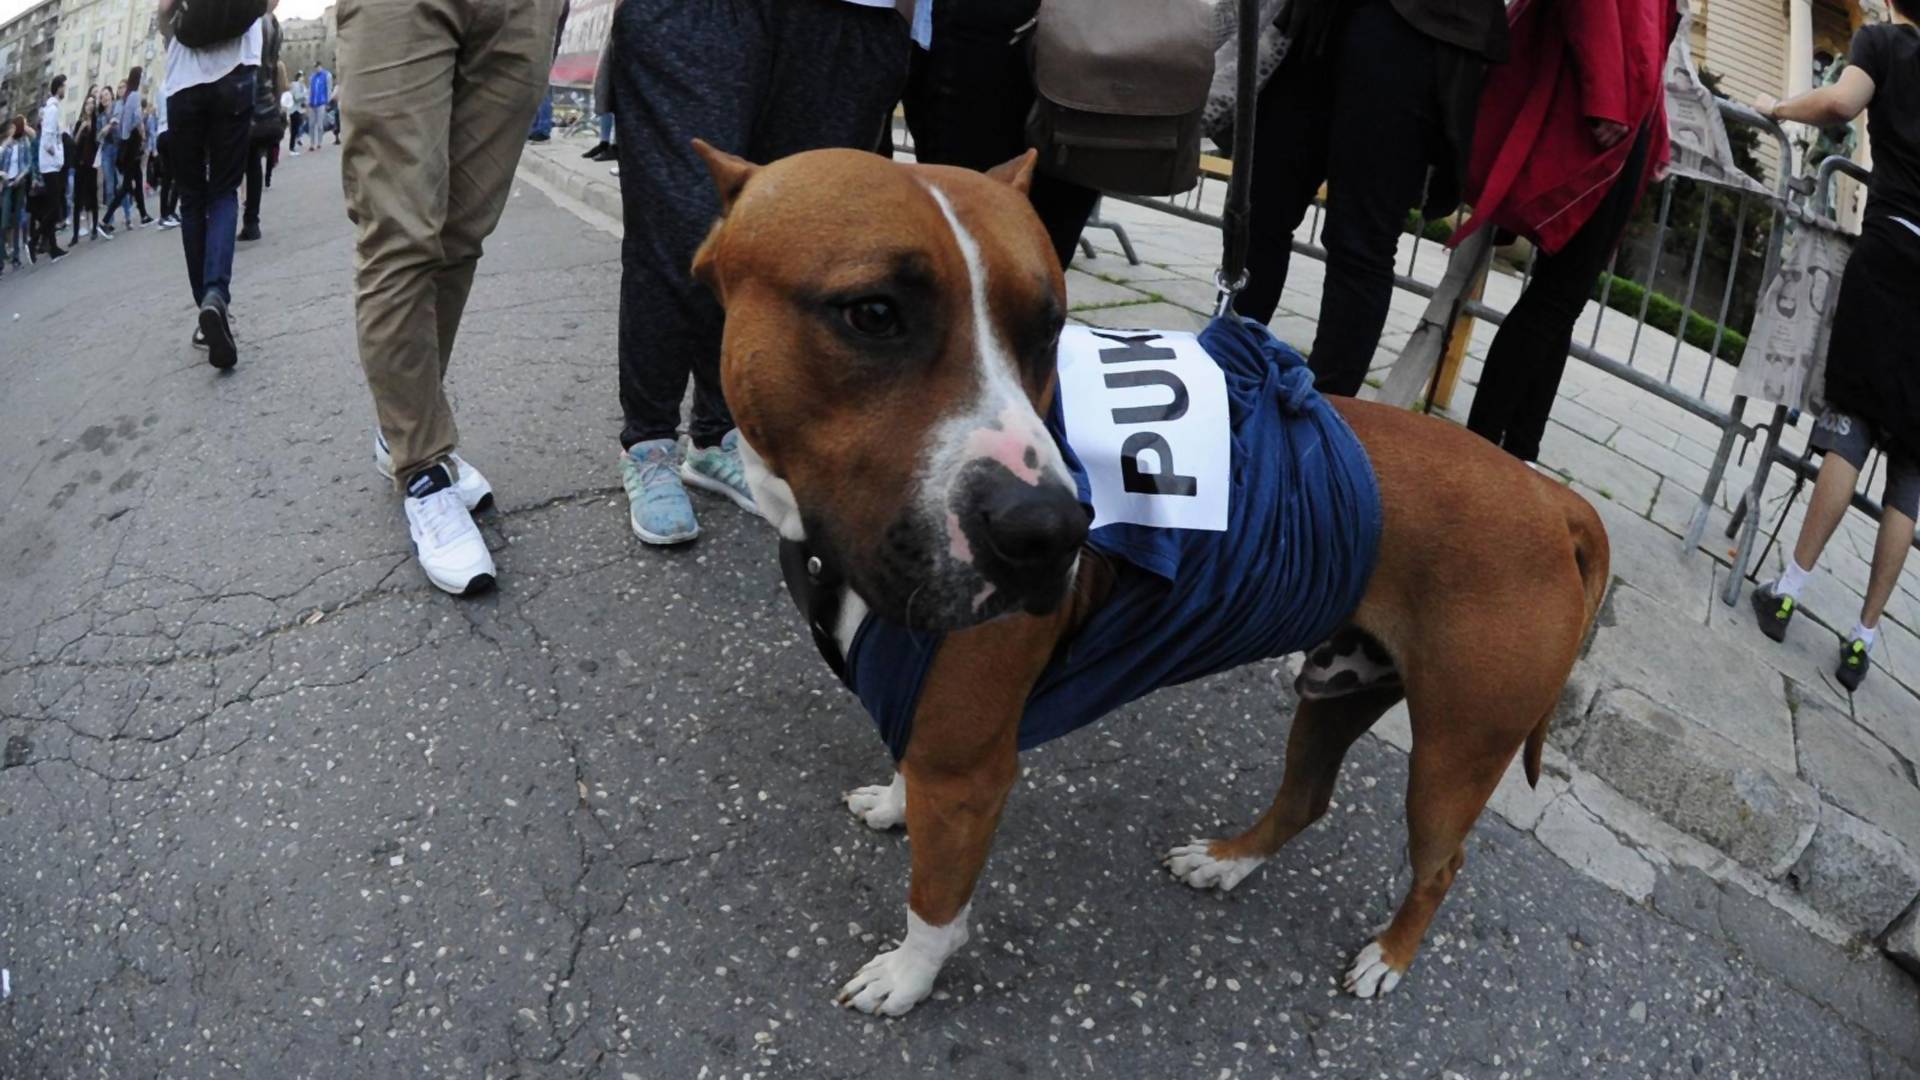 Pas koji podržava demonstrante je naš heroj protesta - pogađate šta "kaže"?